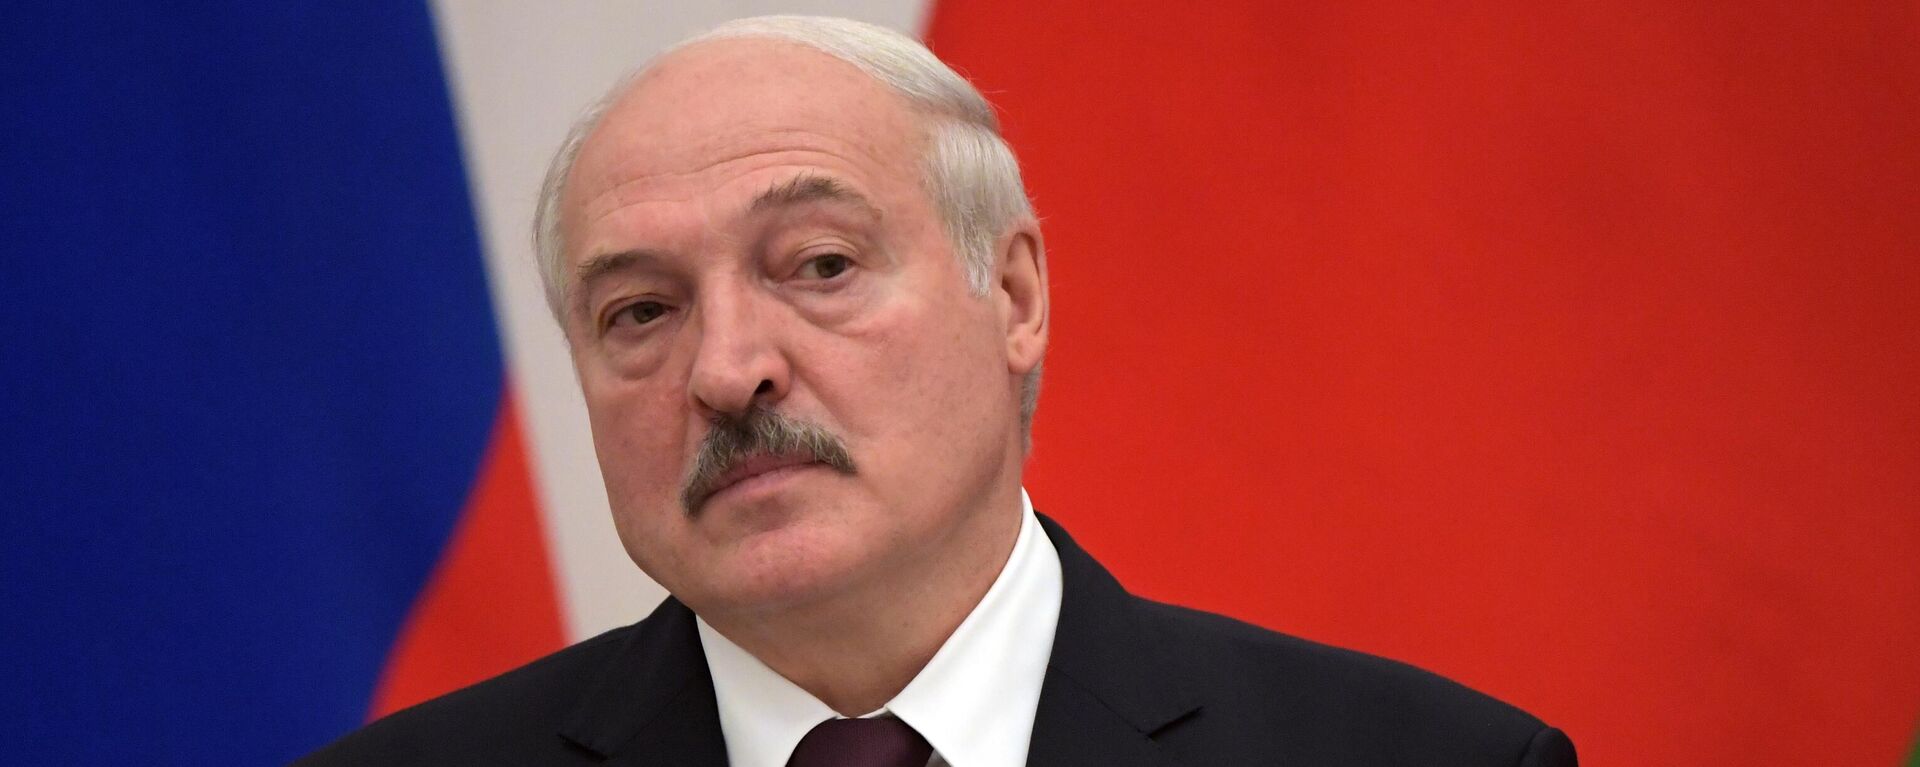 Президент Беларуси Александр Лукашенко - Sputnik Латвия, 1920, 03.12.2021